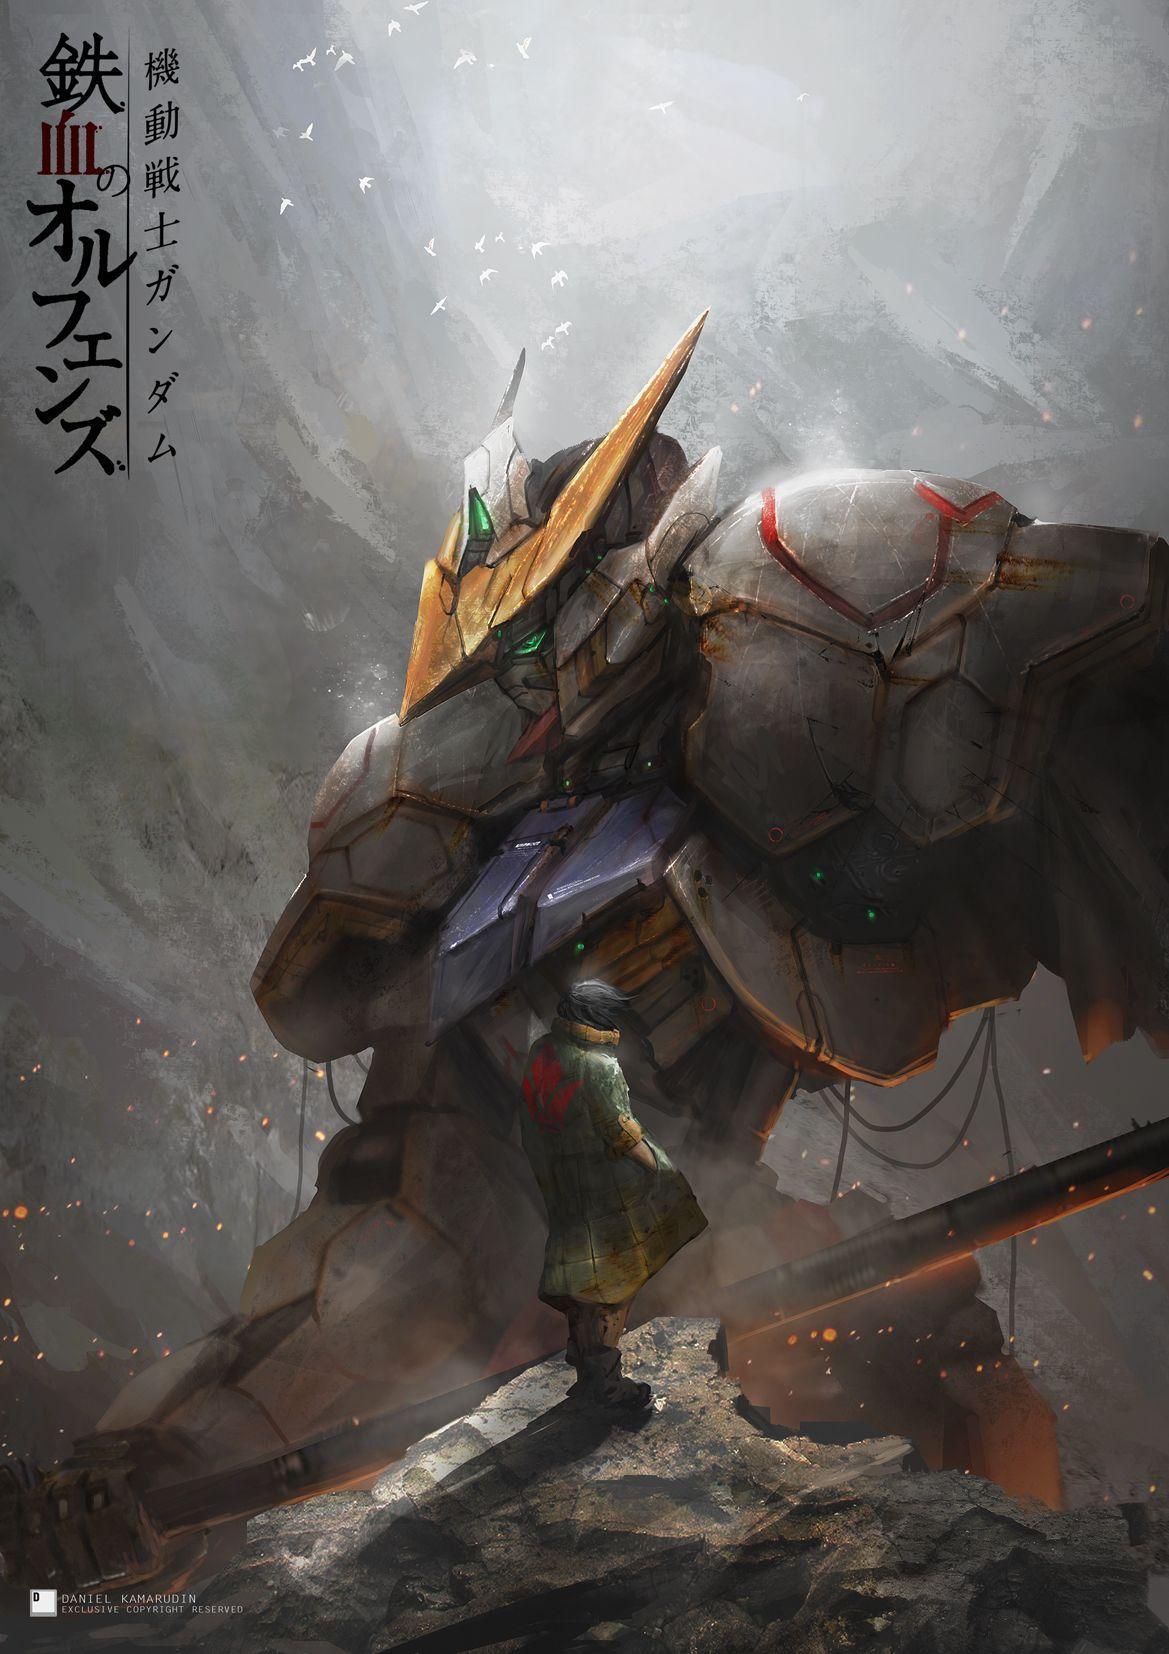 Terbaru 12+ Wallpaper Android Gundam Richa Wallpaper